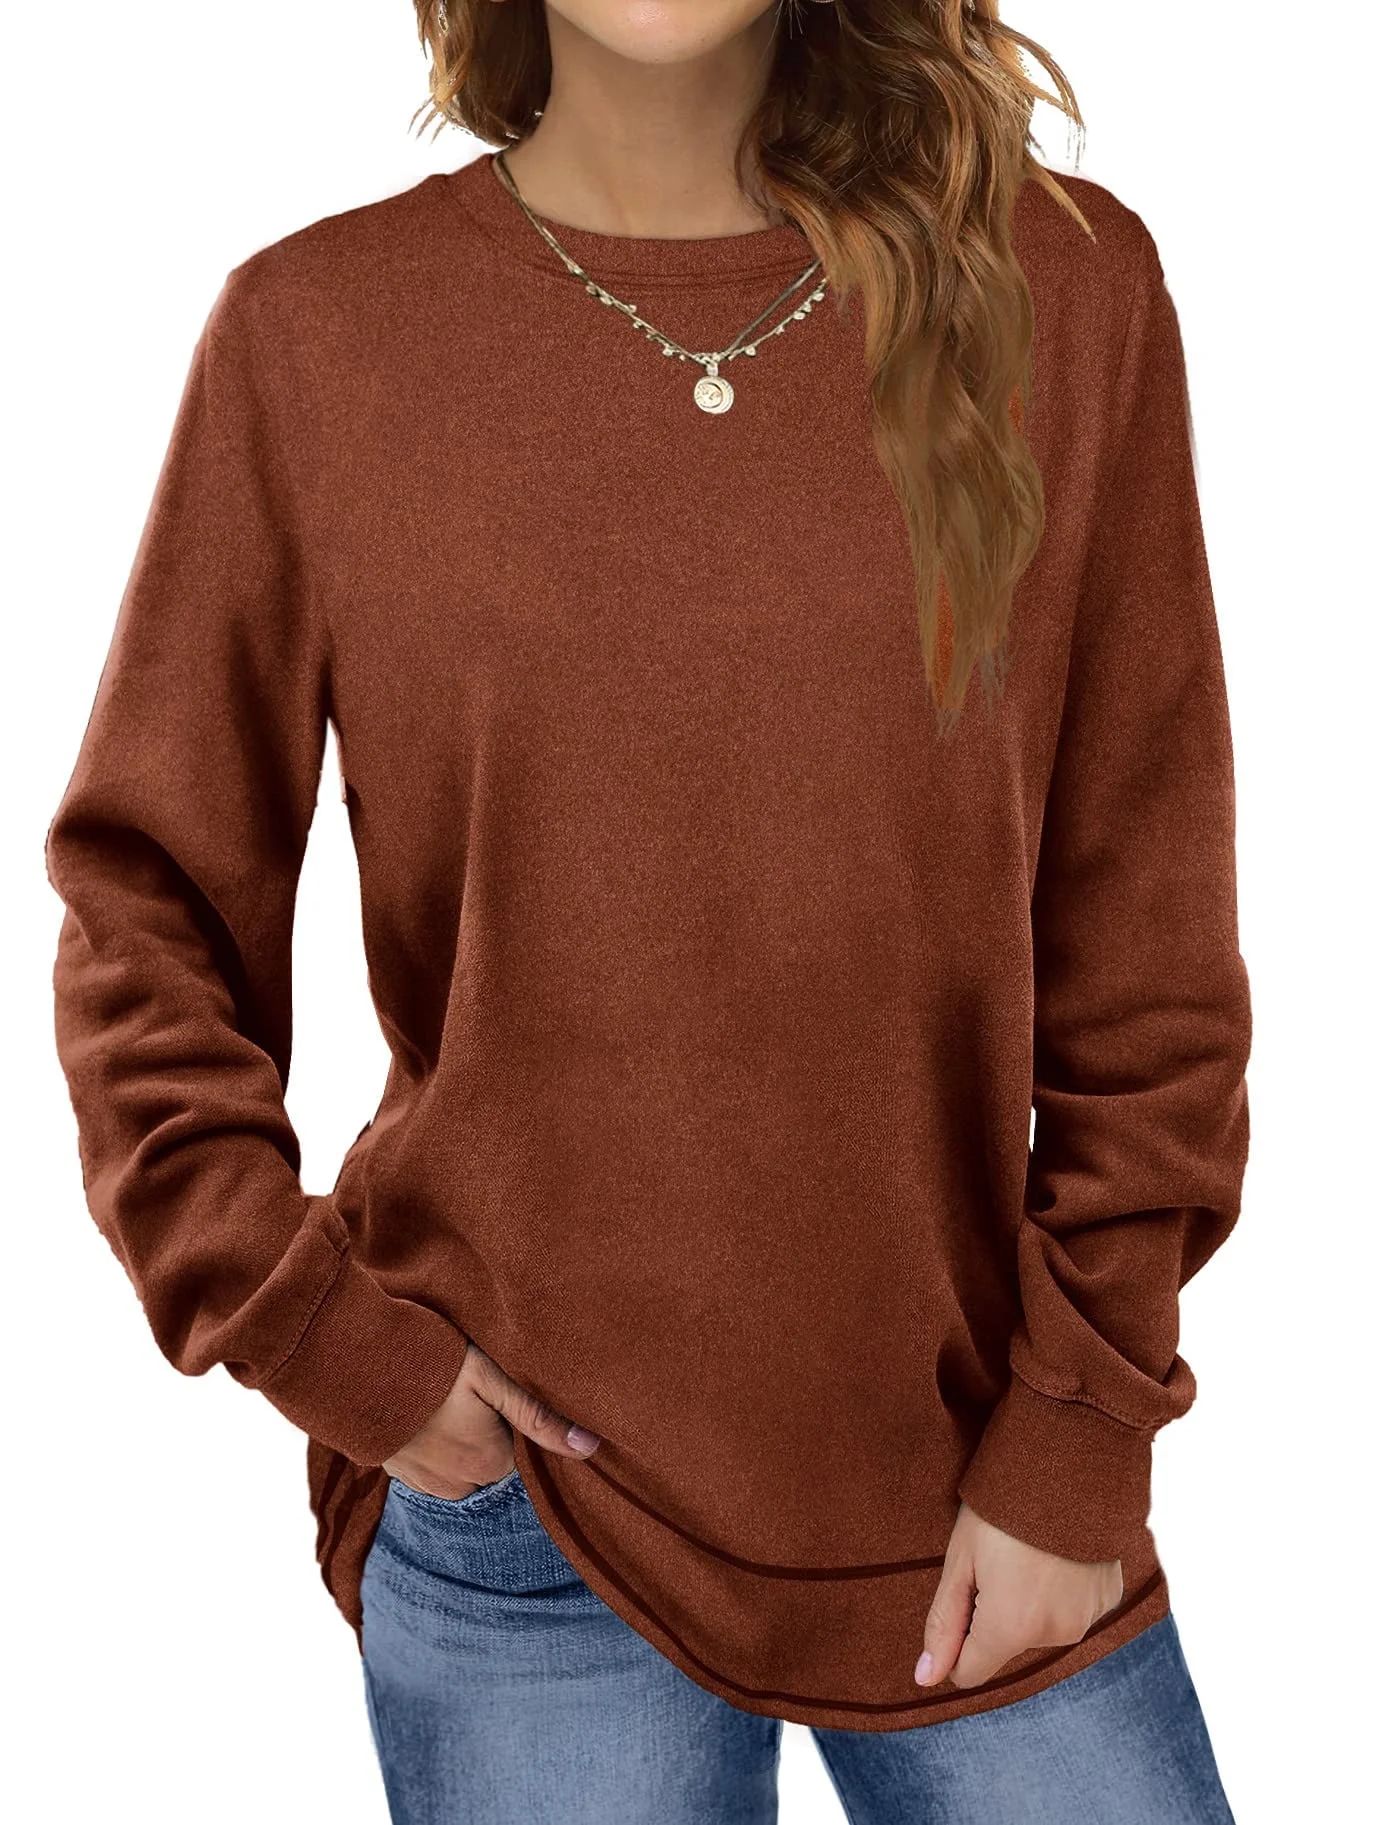 Fantaslook Sweatshirts for Women Crewneck Casual Long Sleeve Shirts Tunic Tops | Walmart (US)